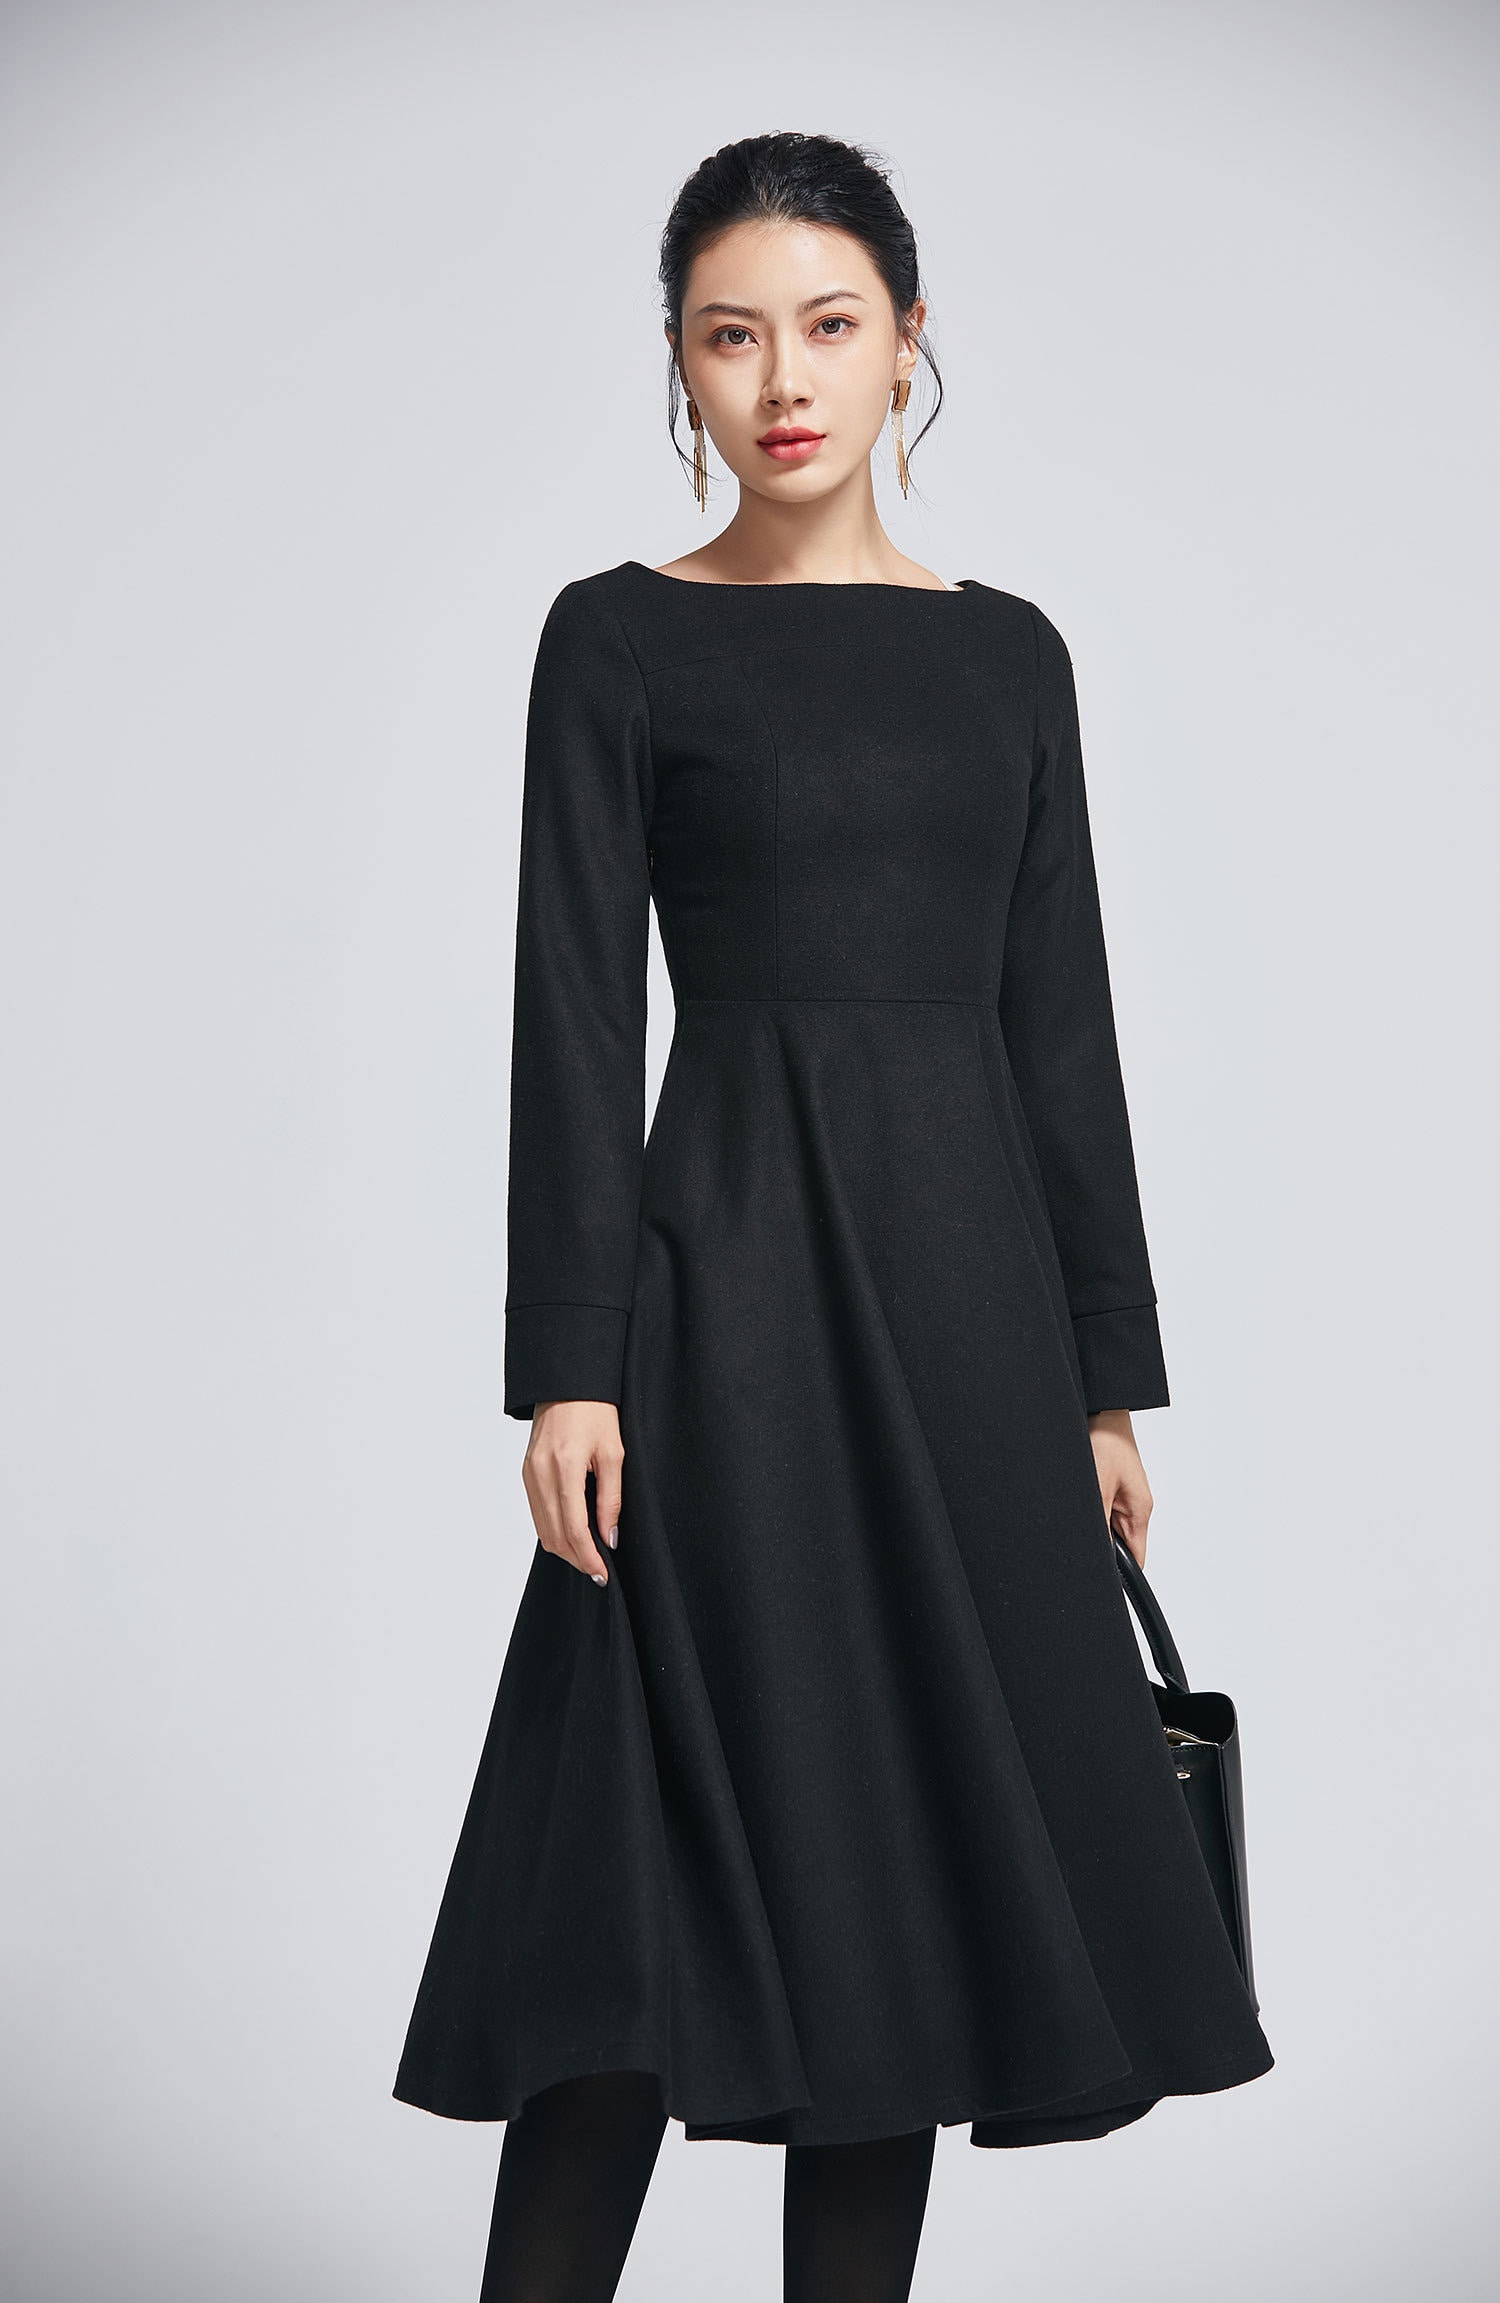 Little Black Dress Wool Dress Winter Dress for Women Long | Etsy